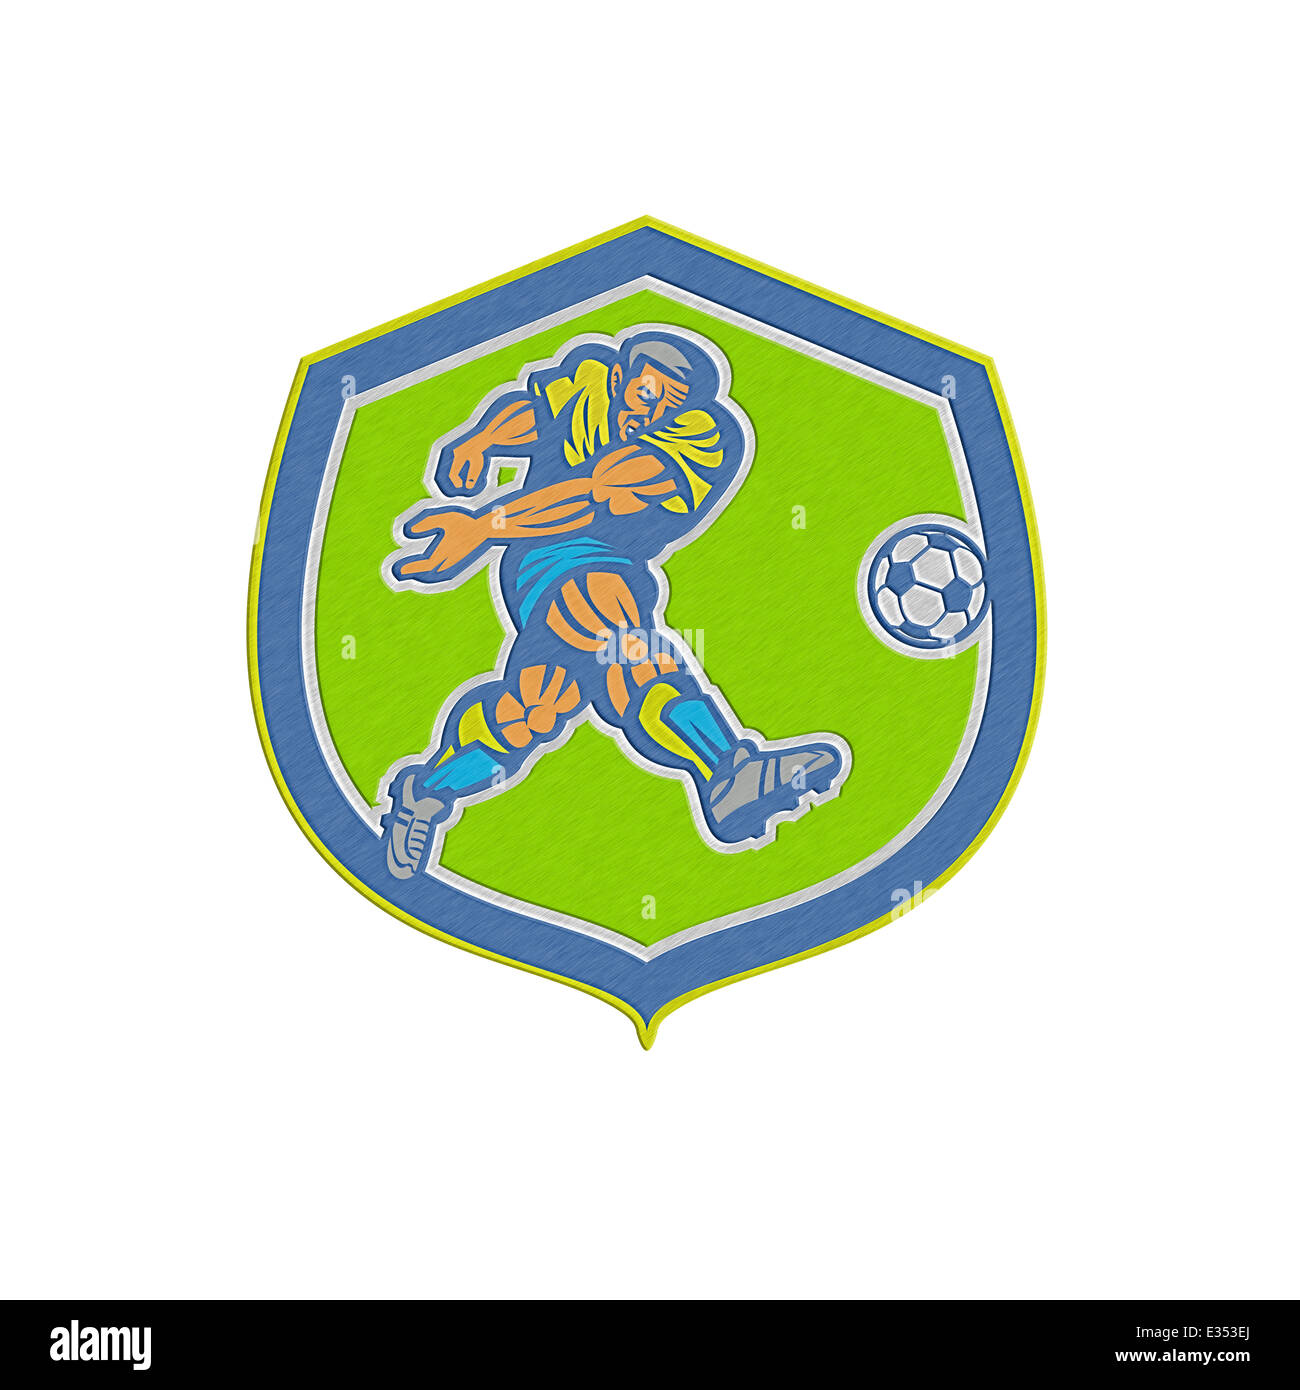 In stile metallico illustrazione di un calcio giocatore calci palla calcio insieme all'interno della protezione crest fatto in stile retrò. Foto Stock